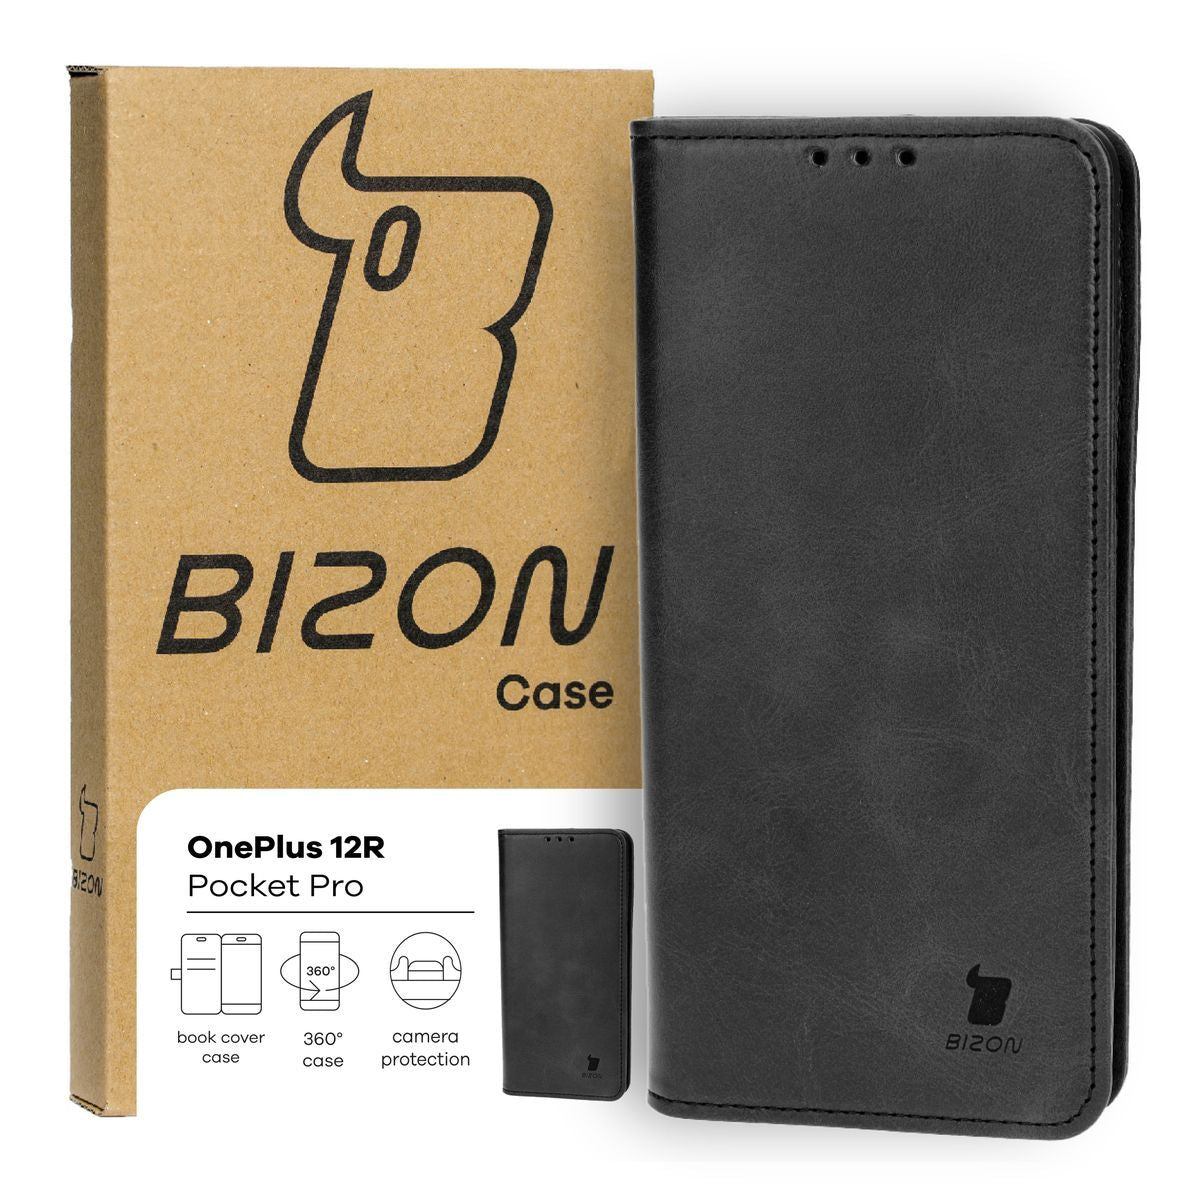 Schutzhülle für OnePlus 12R, Bizon Case Pocket Pro, Schwarz